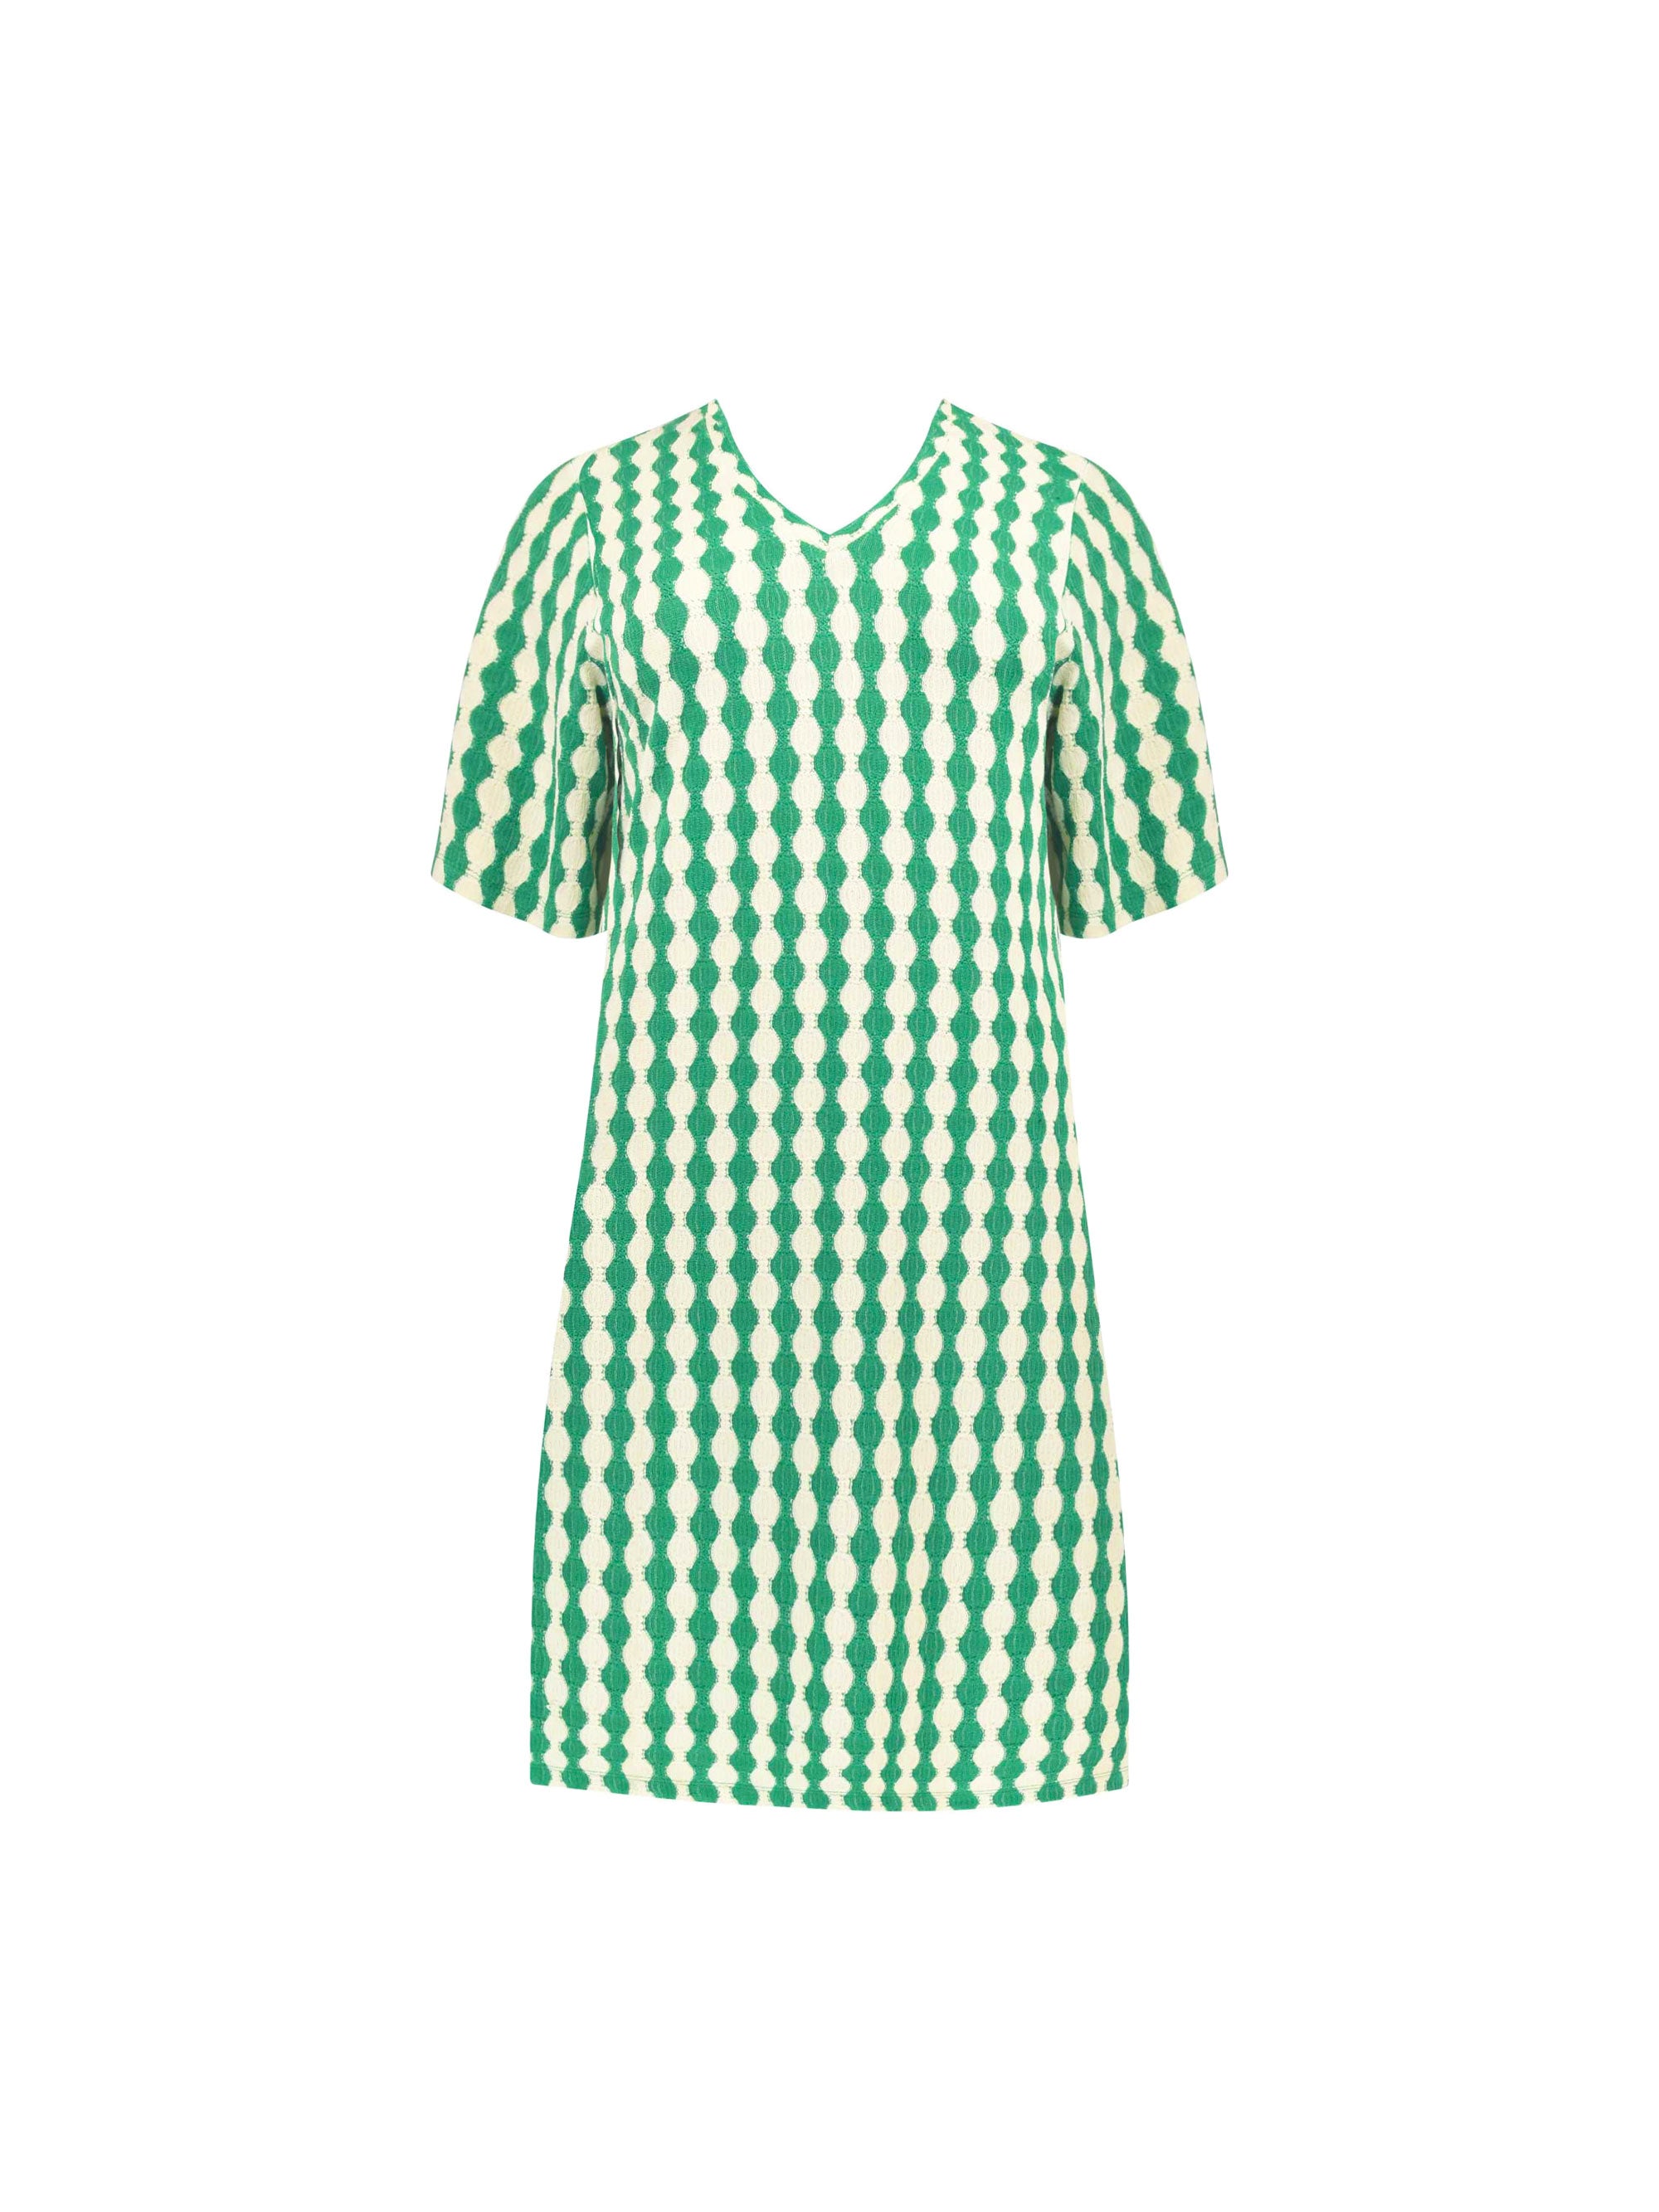 Green & Ivory Crochet Swing Dress